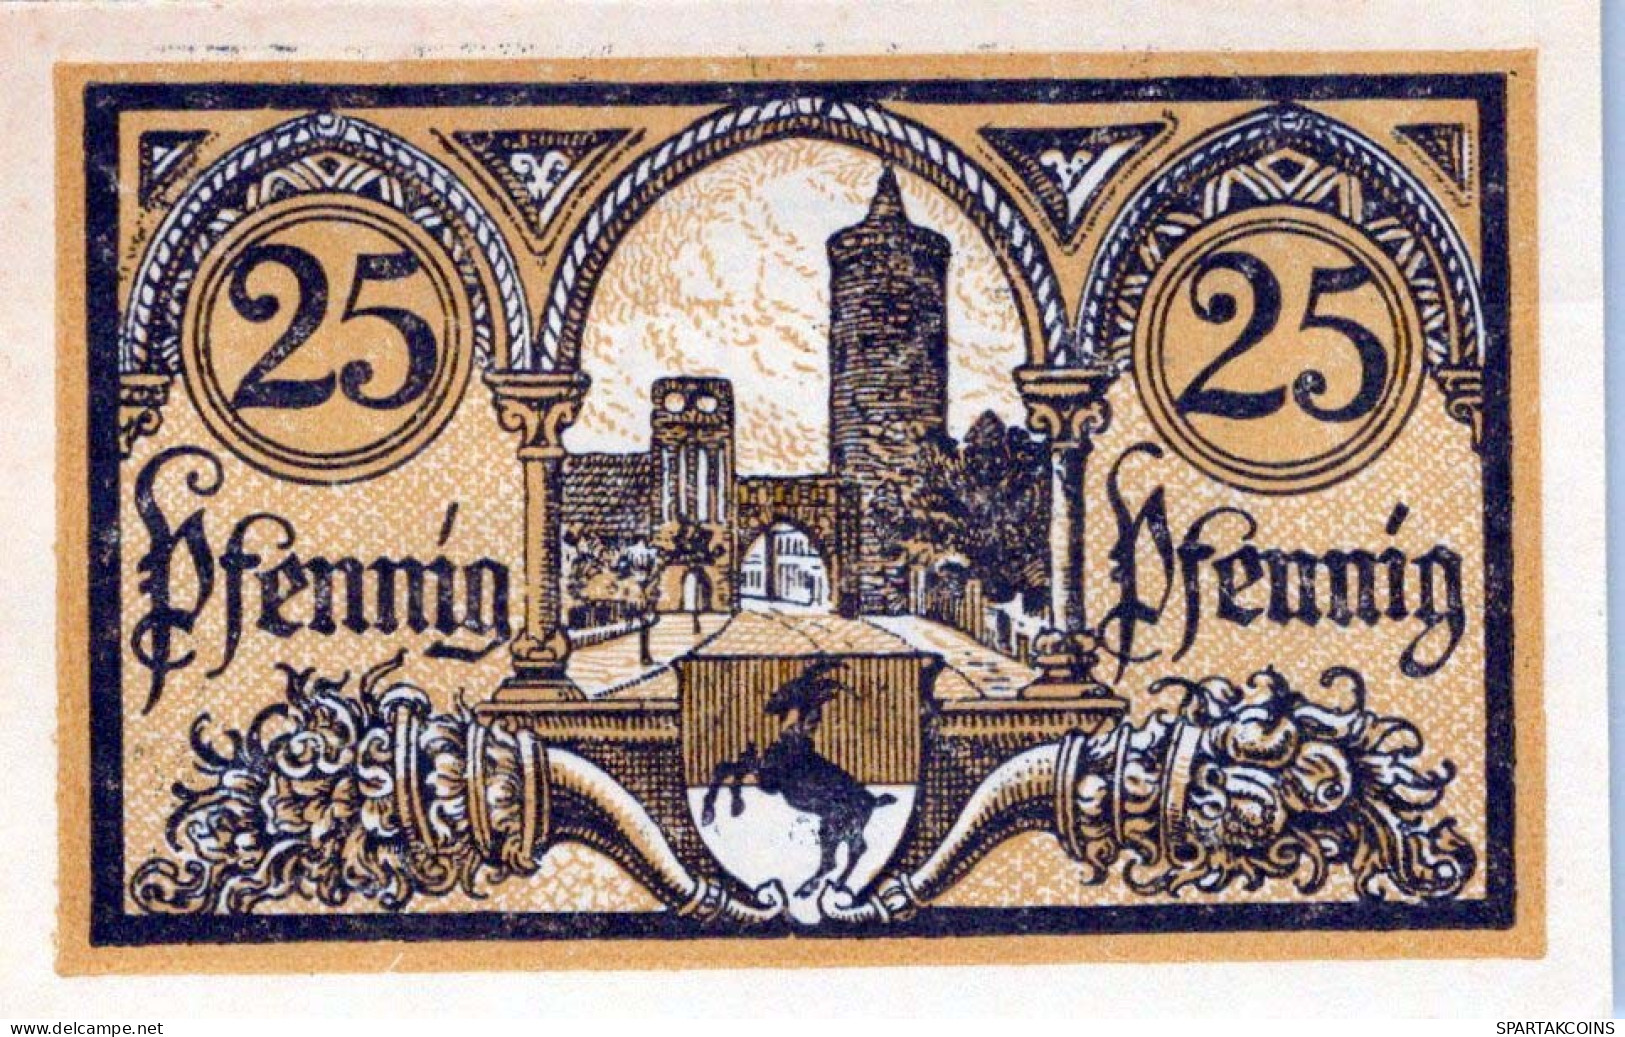 25 PFENNIG 1921 Stadt JÜTERBOG Brandenburg UNC DEUTSCHLAND Notgeld #PI806 - Lokale Ausgaben